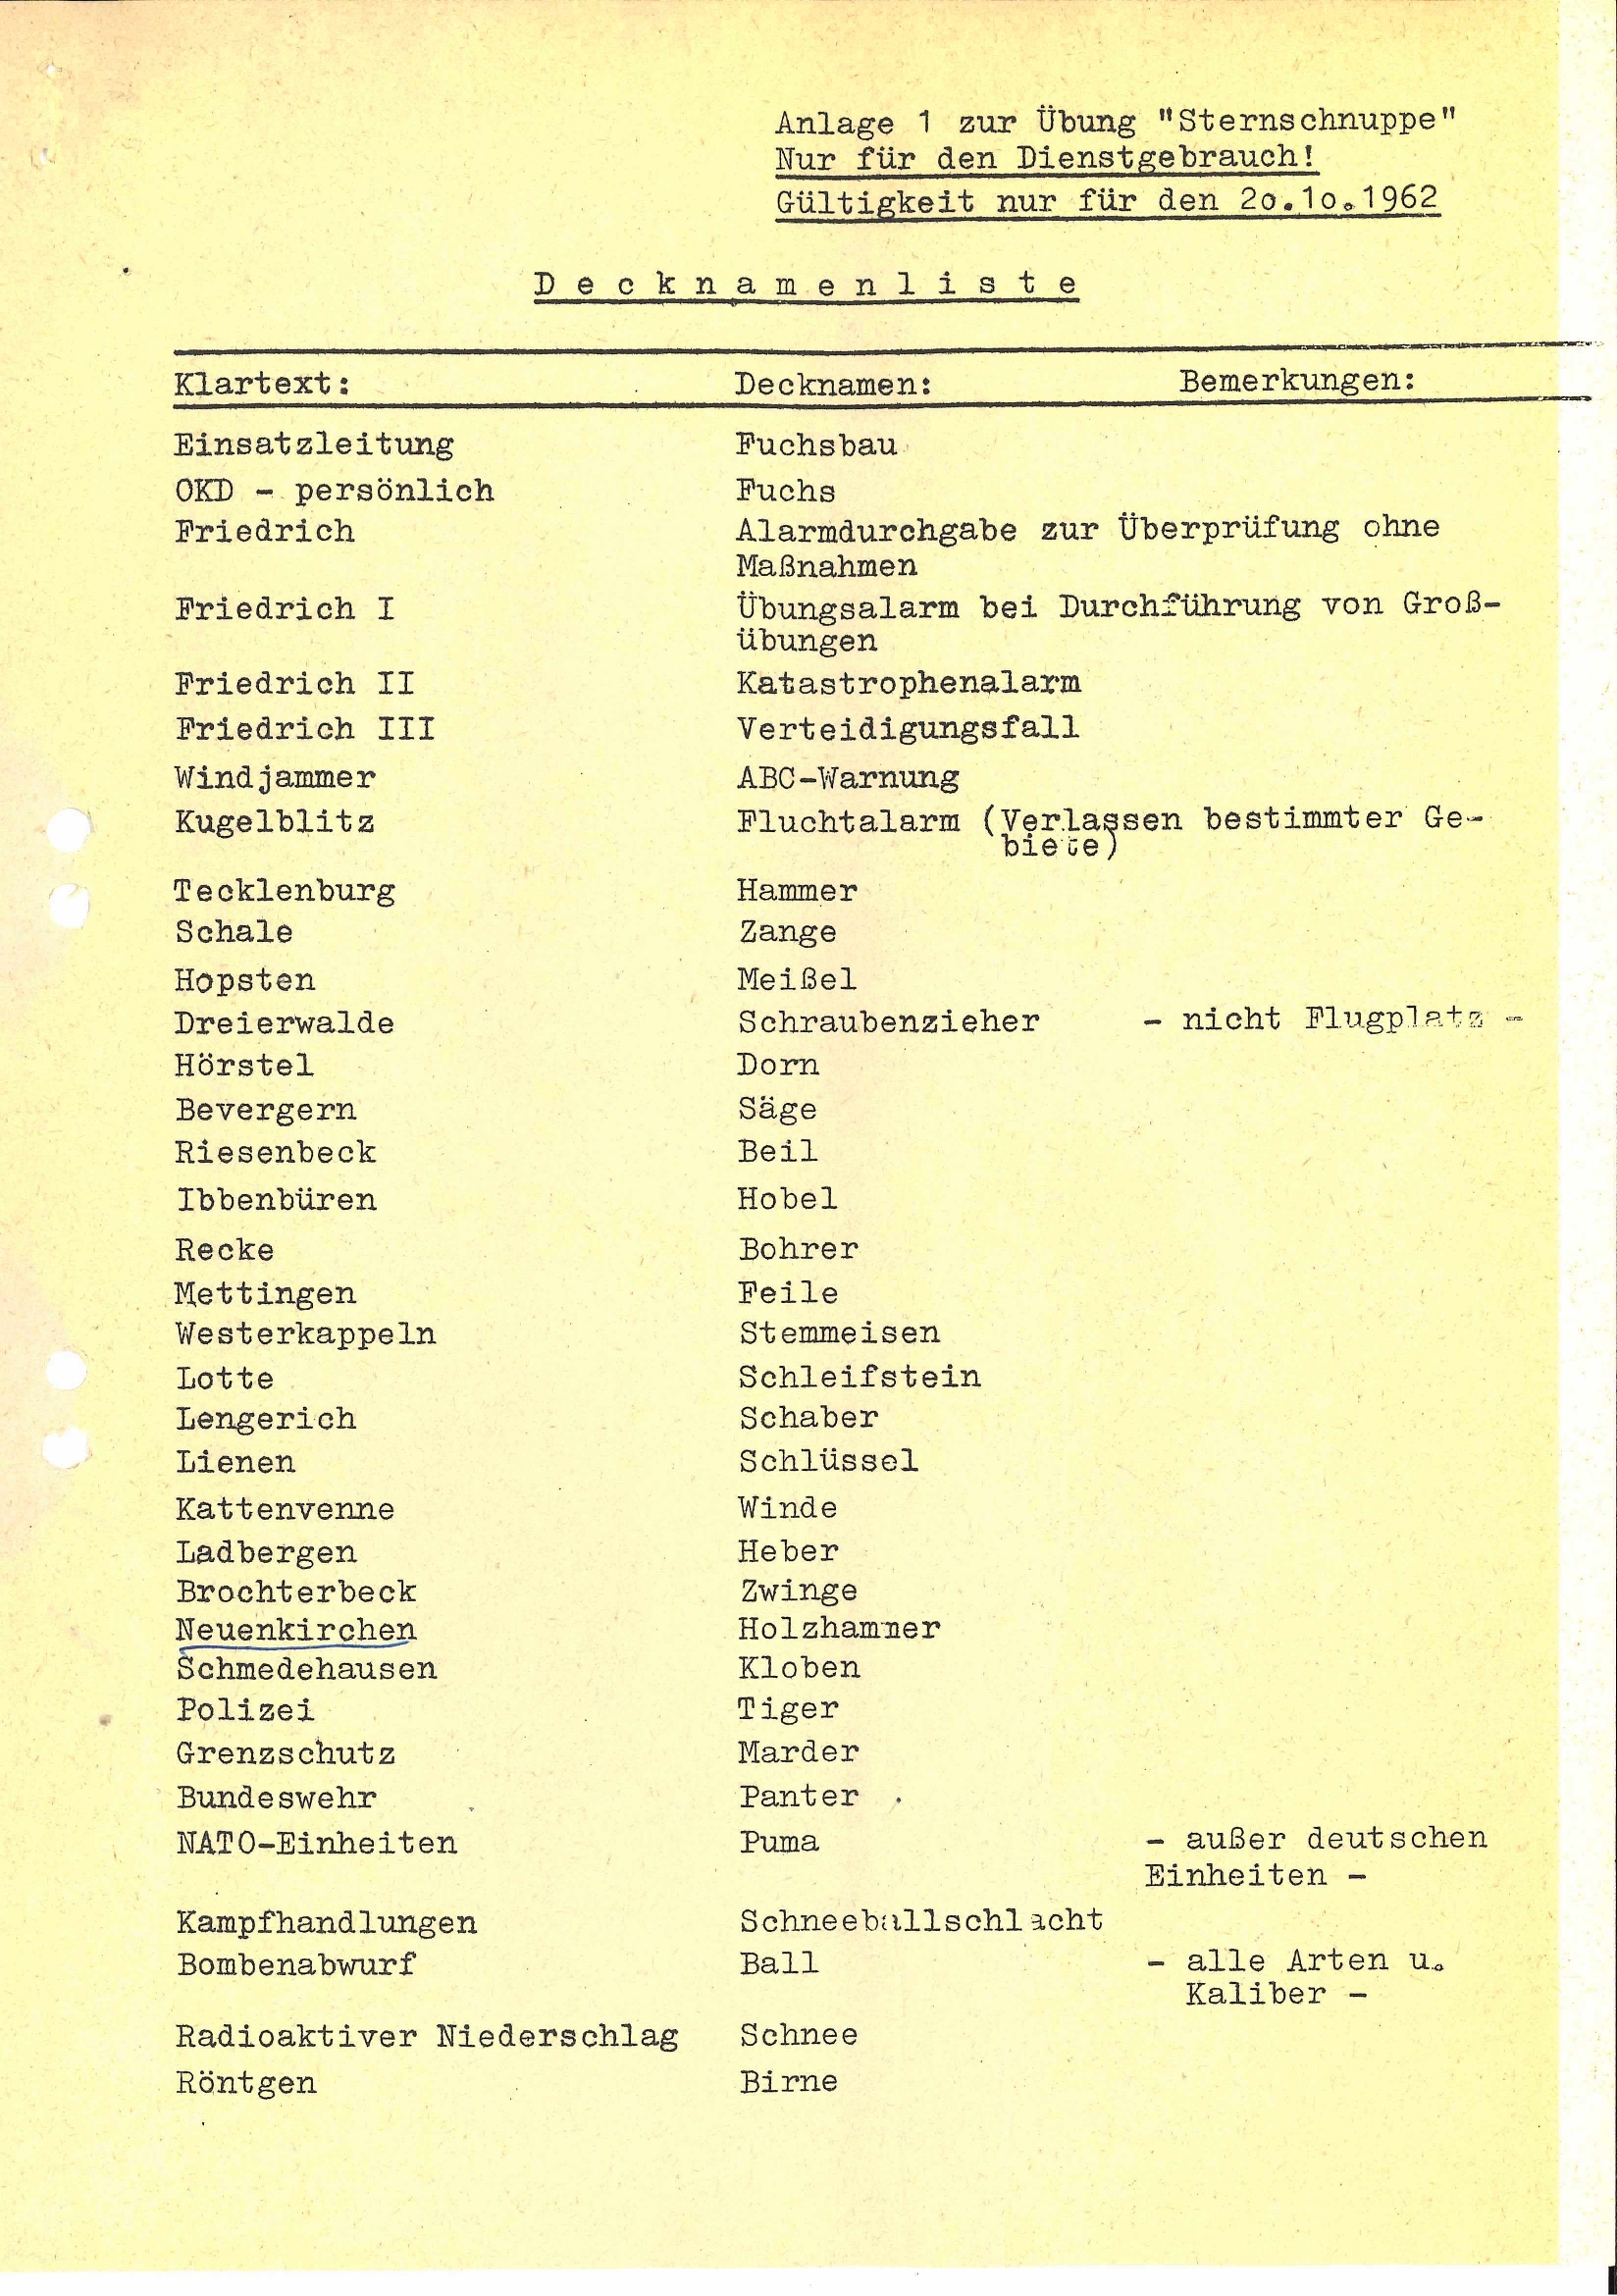 Liste mit Decknamen der Luftschutzübung "Sternschnuppe"